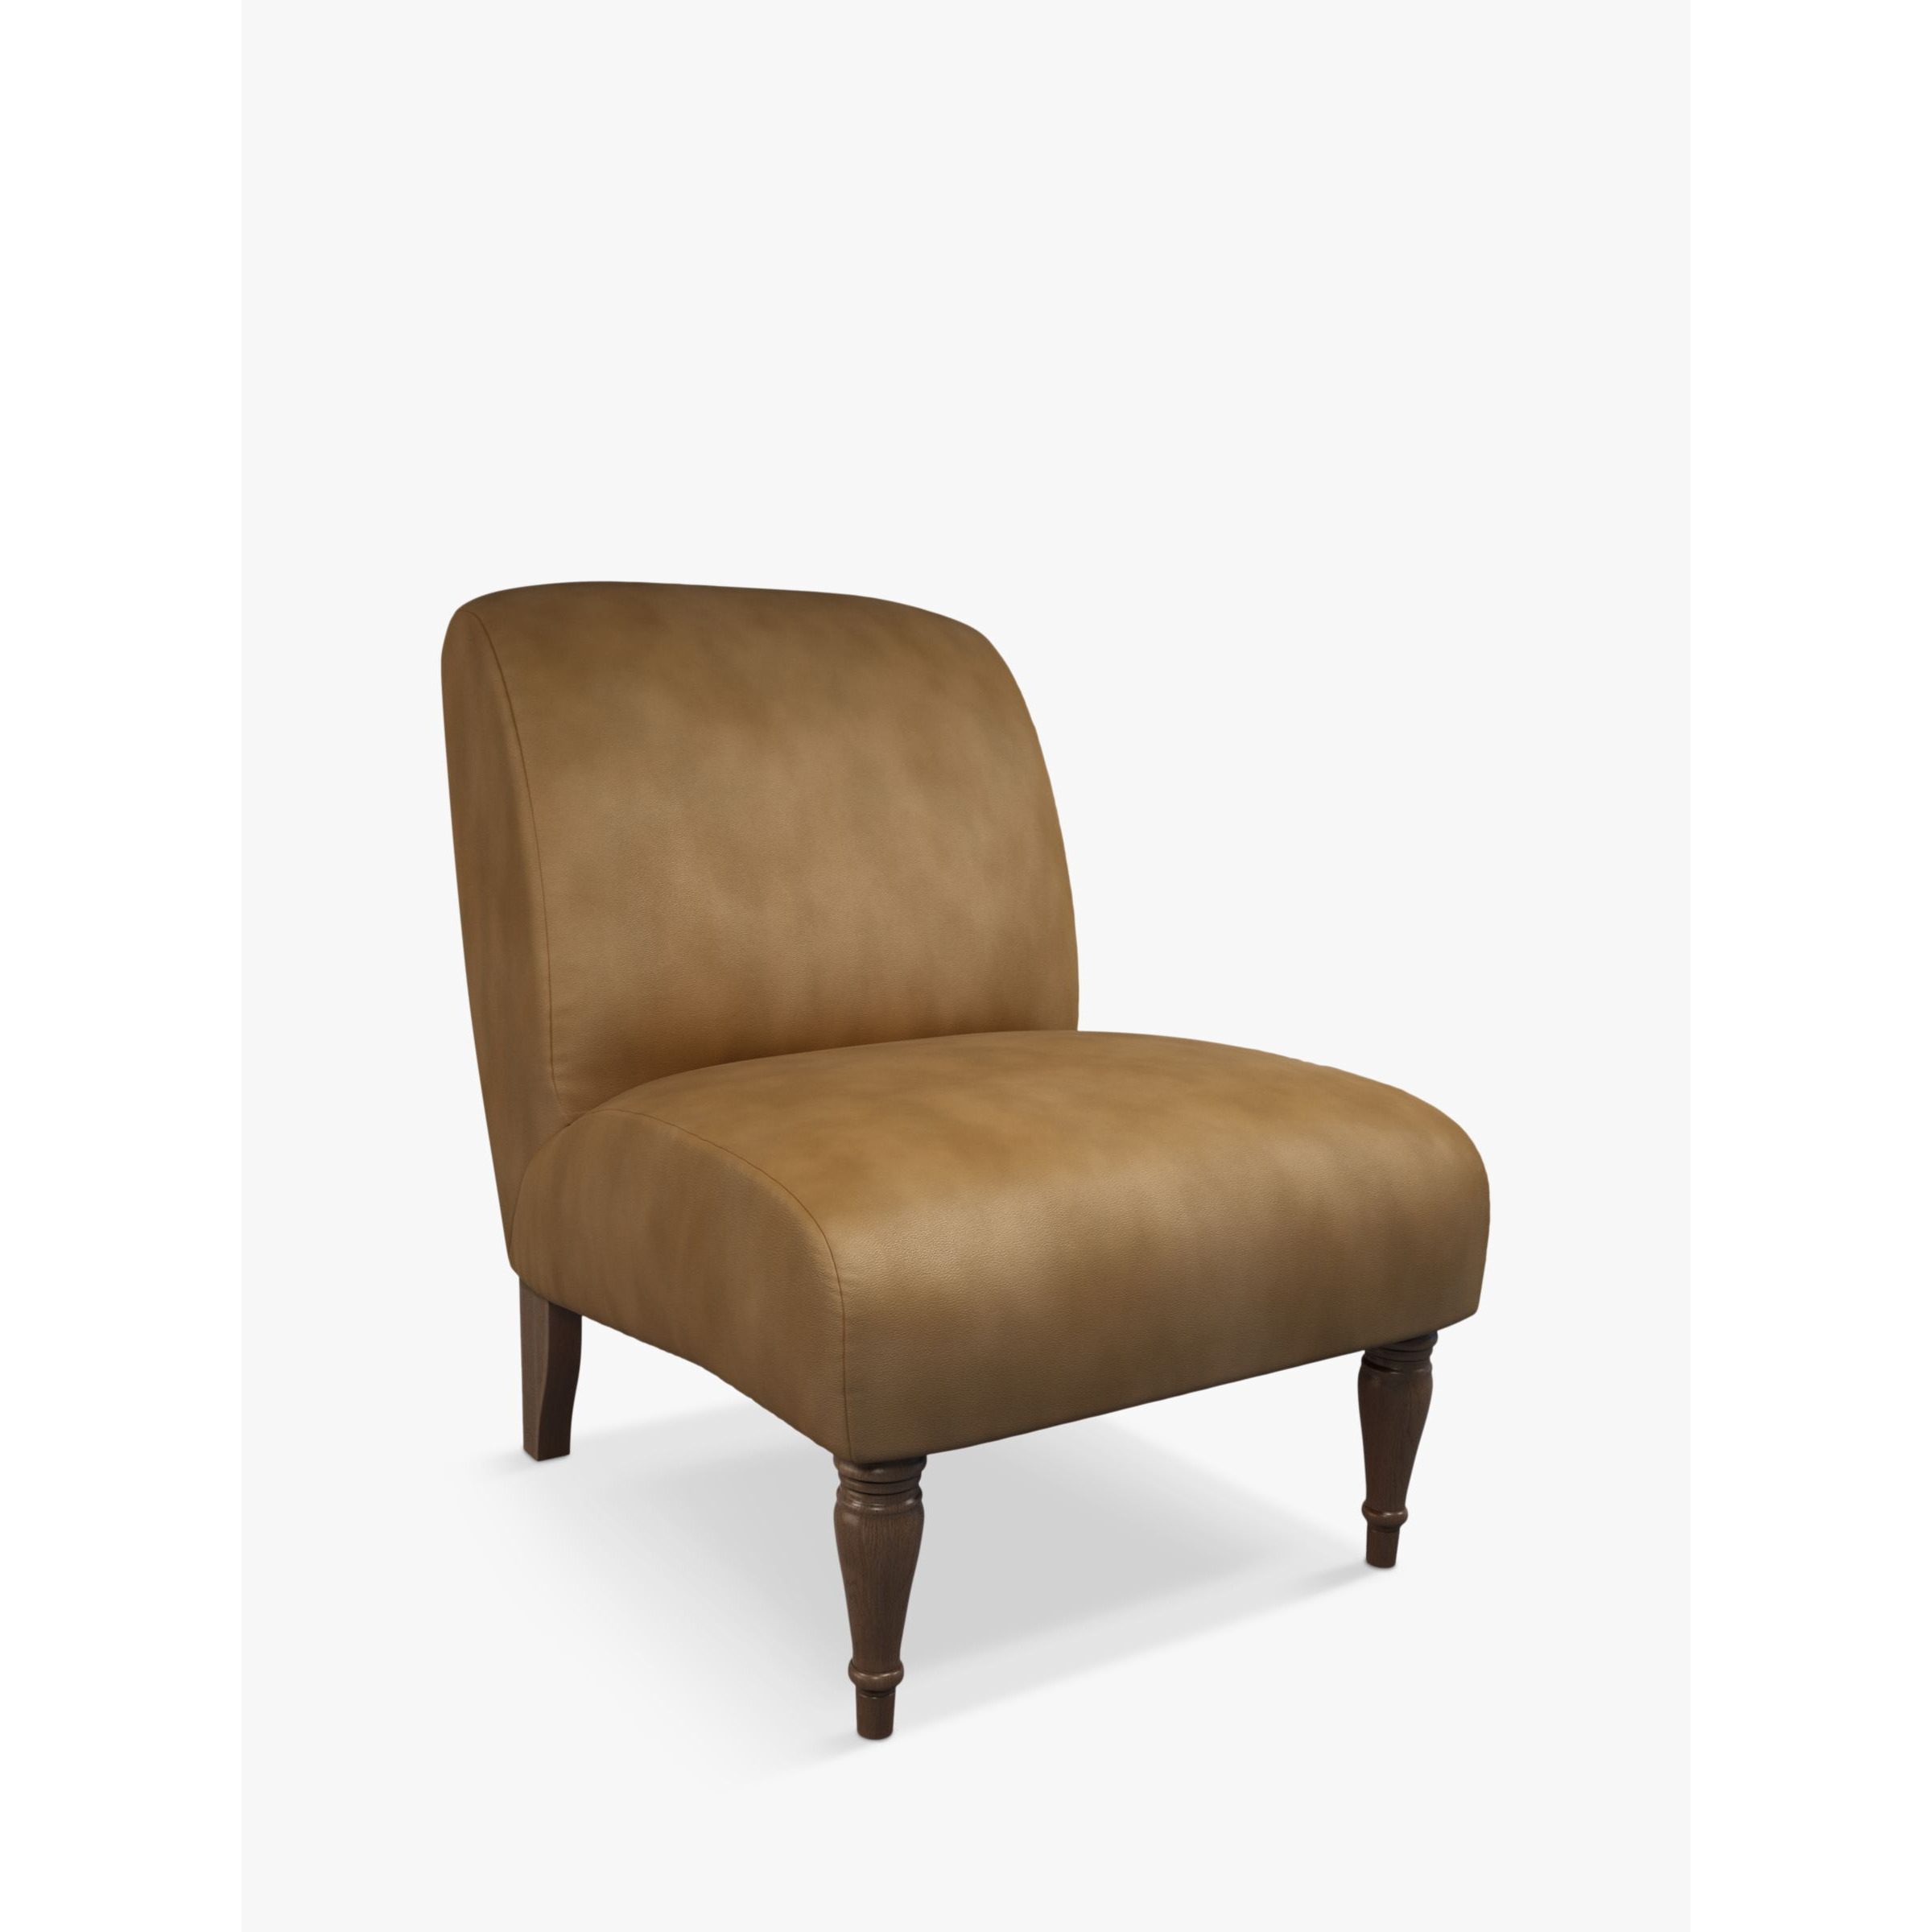 John Lewis Lounge Leather Chair, Dark Leg - image 1